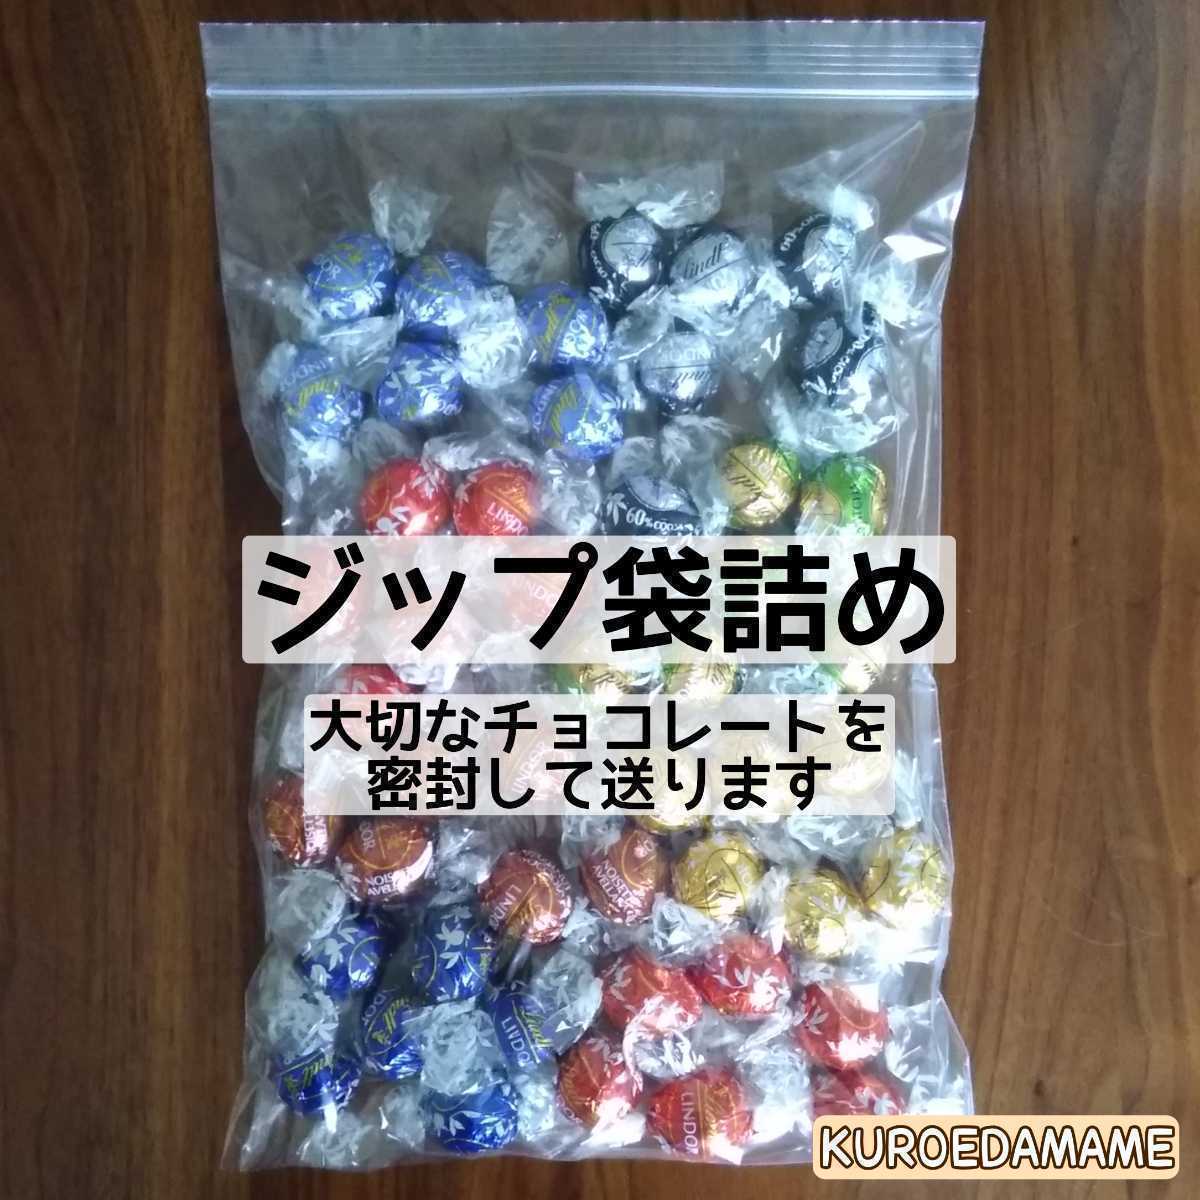 【箱詰・スピード発送】W48 ホワイト 48個 リンツ リンドール チョコレート ジップ袋詰 ダンボール箱梱包 送料無料 くろえだまめ_画像5